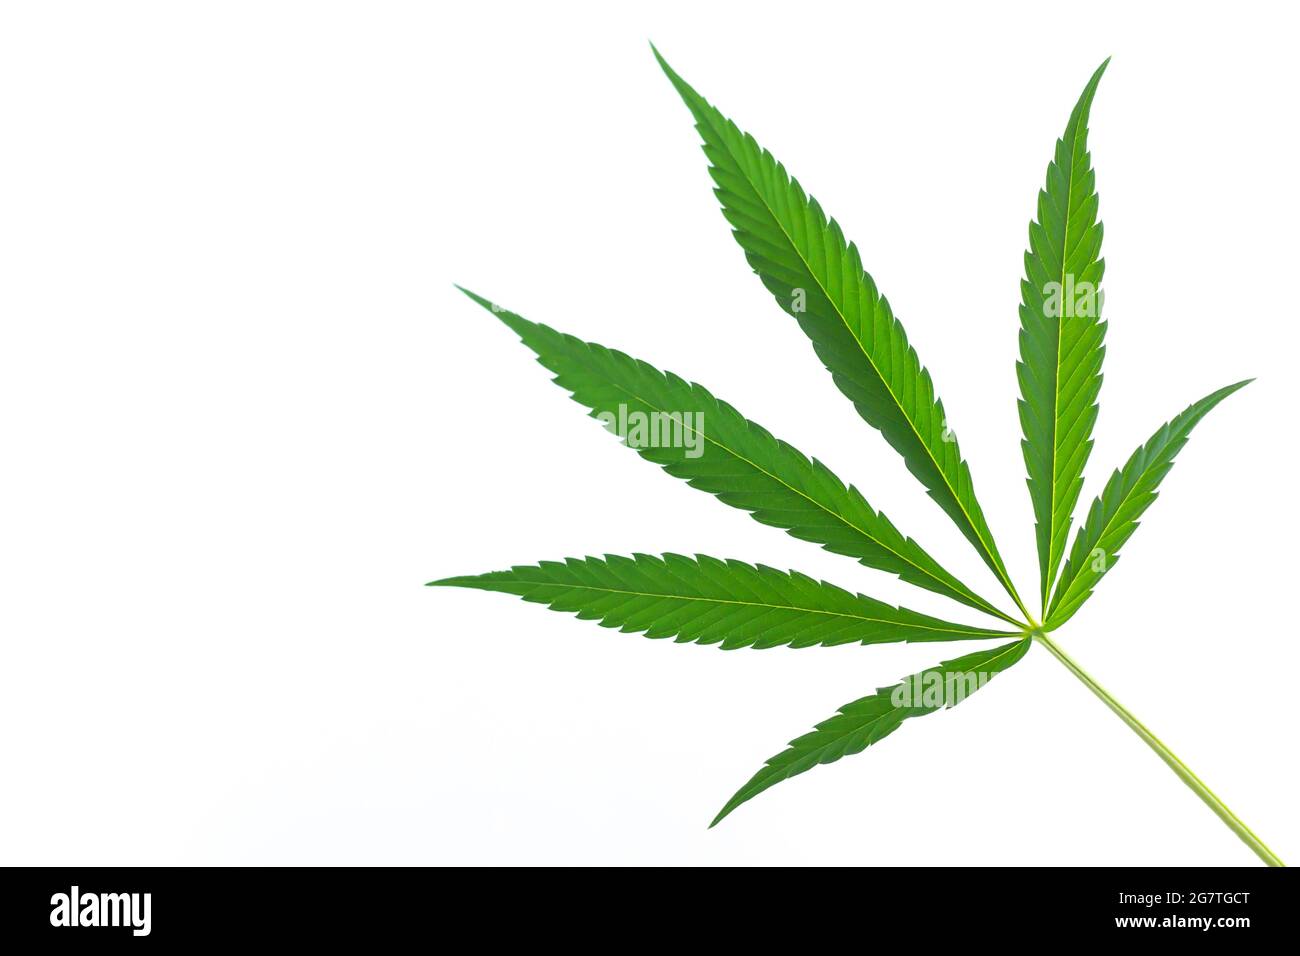 Hemp or cannabis single leaf isolated on white background Stock Photo